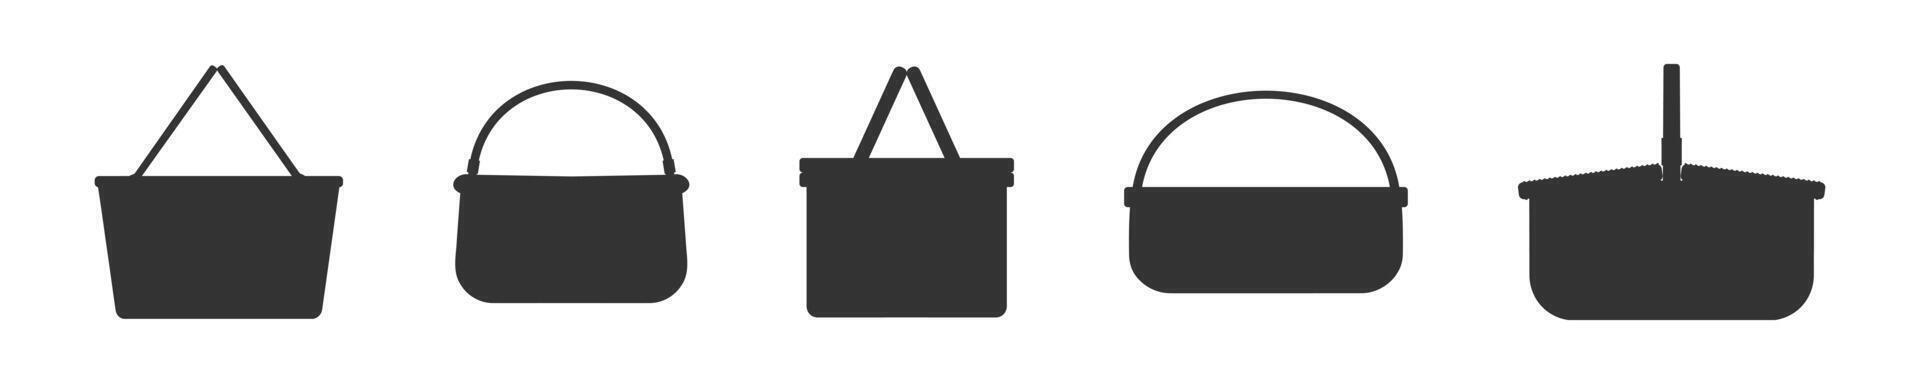 siluetas de vacío mimbre picnic canastas conjunto de diferente mano tejido sauce cestas y cestas vector